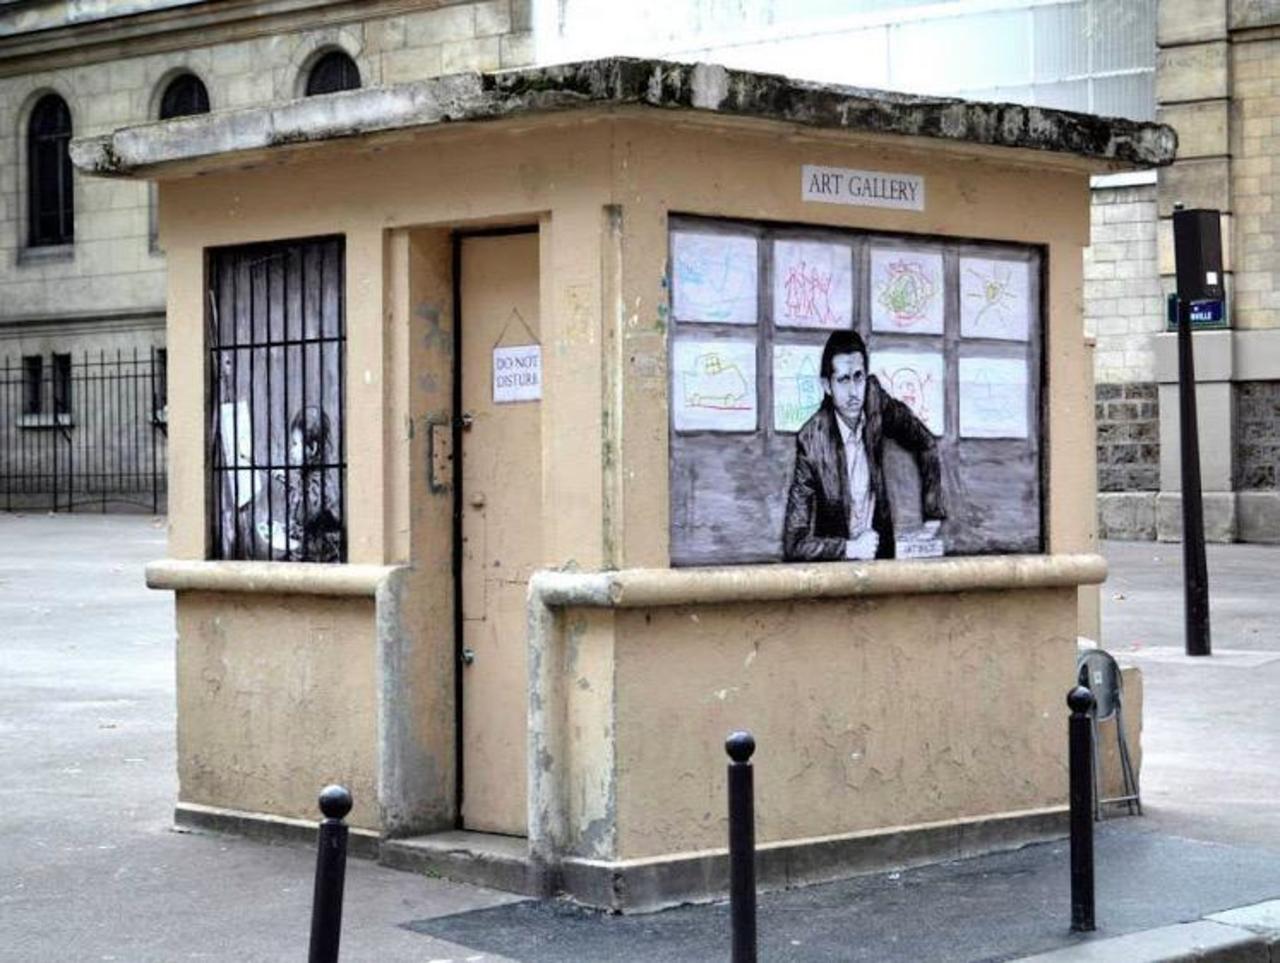 RT @GhislaineGATINE: #streetart by #Levalet in #Paris #switch #graffiti #bedifferent #art #art http://t.co/vBNpNjPEFJ